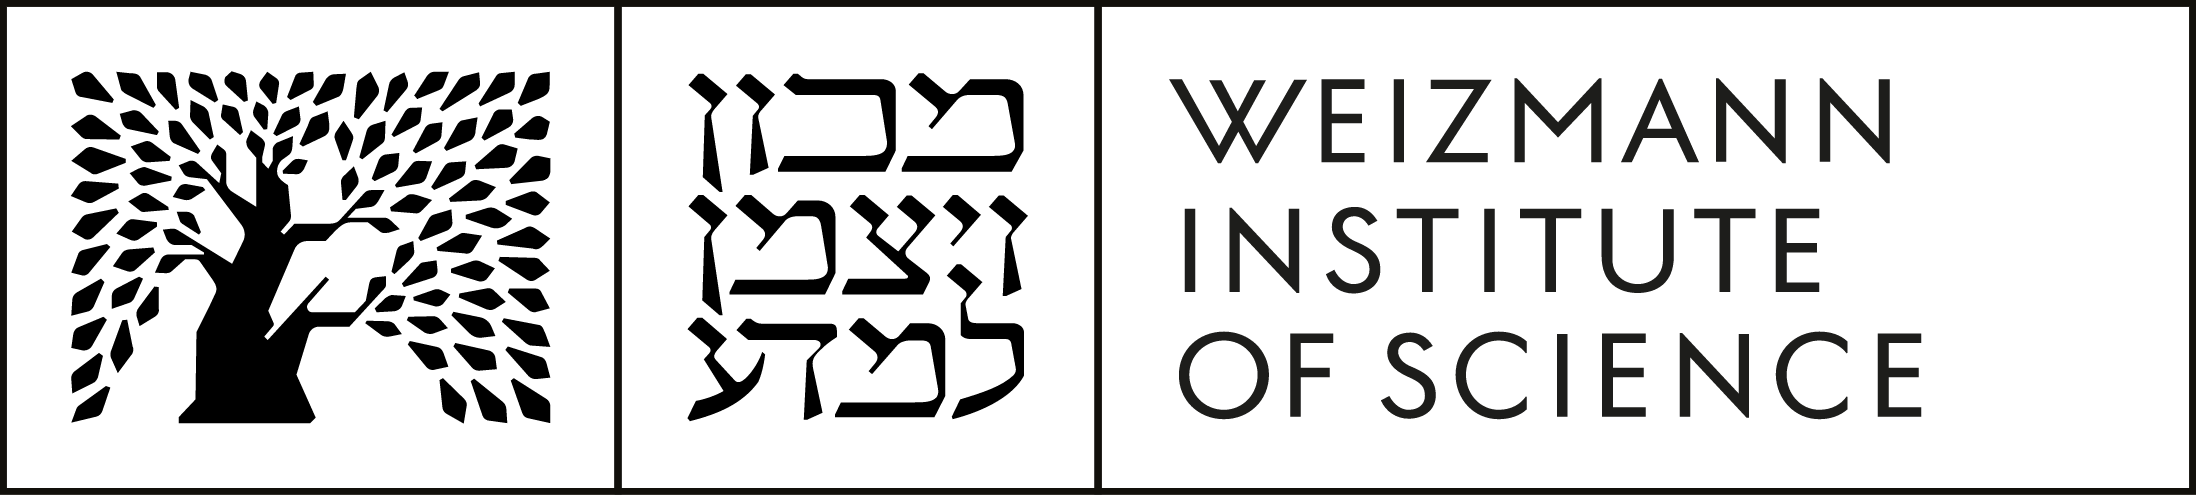 Weizmann Institute of Science logo